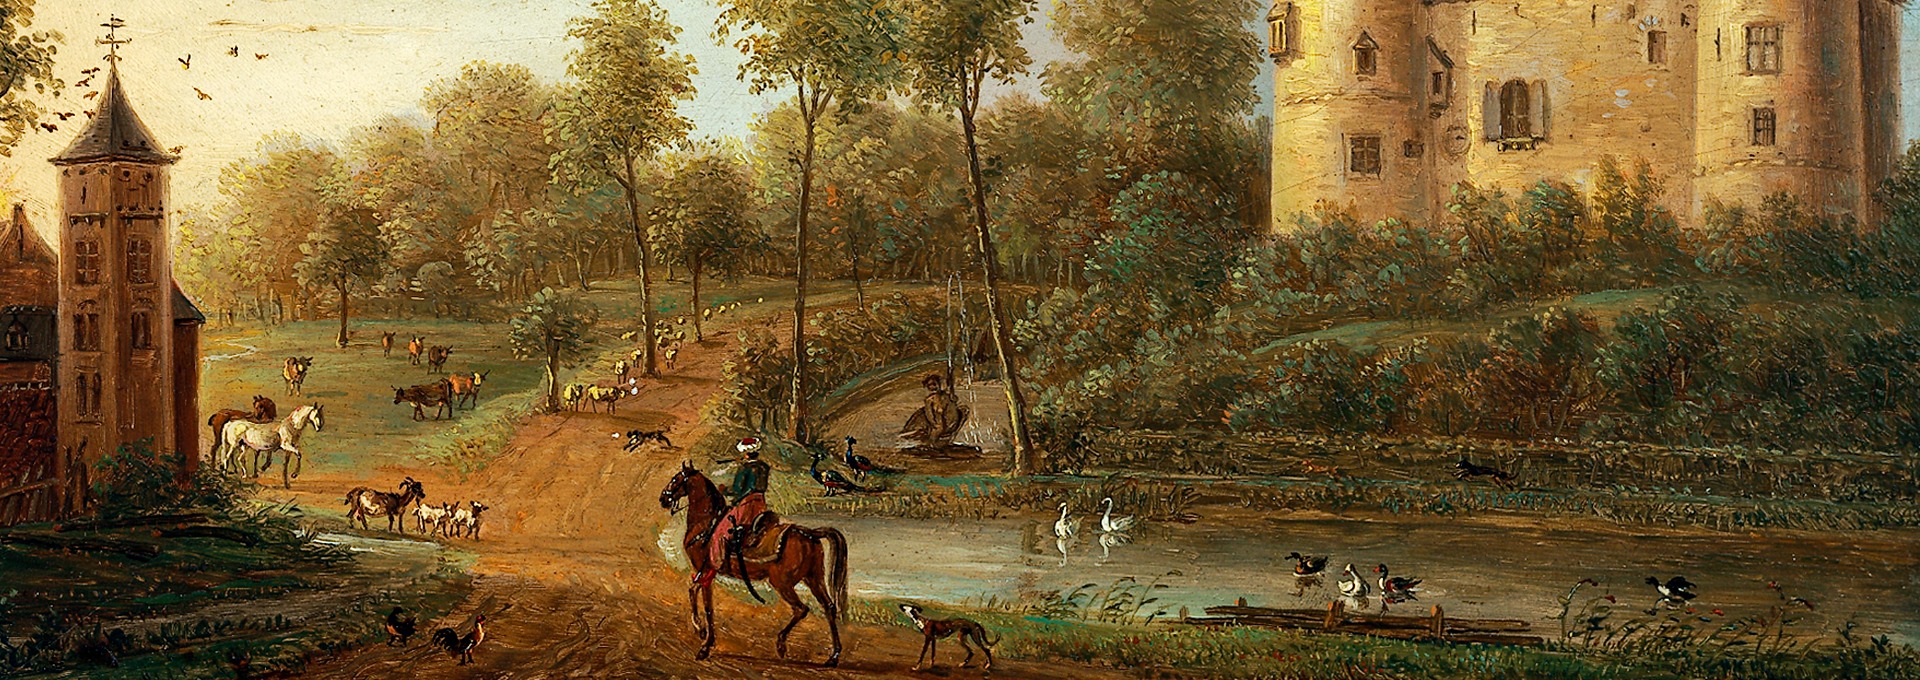 Schilderij van ca. 1805 met het kasteel van gaasbeek in de achtergrond, op de voorgrond Paul Arconati te paard